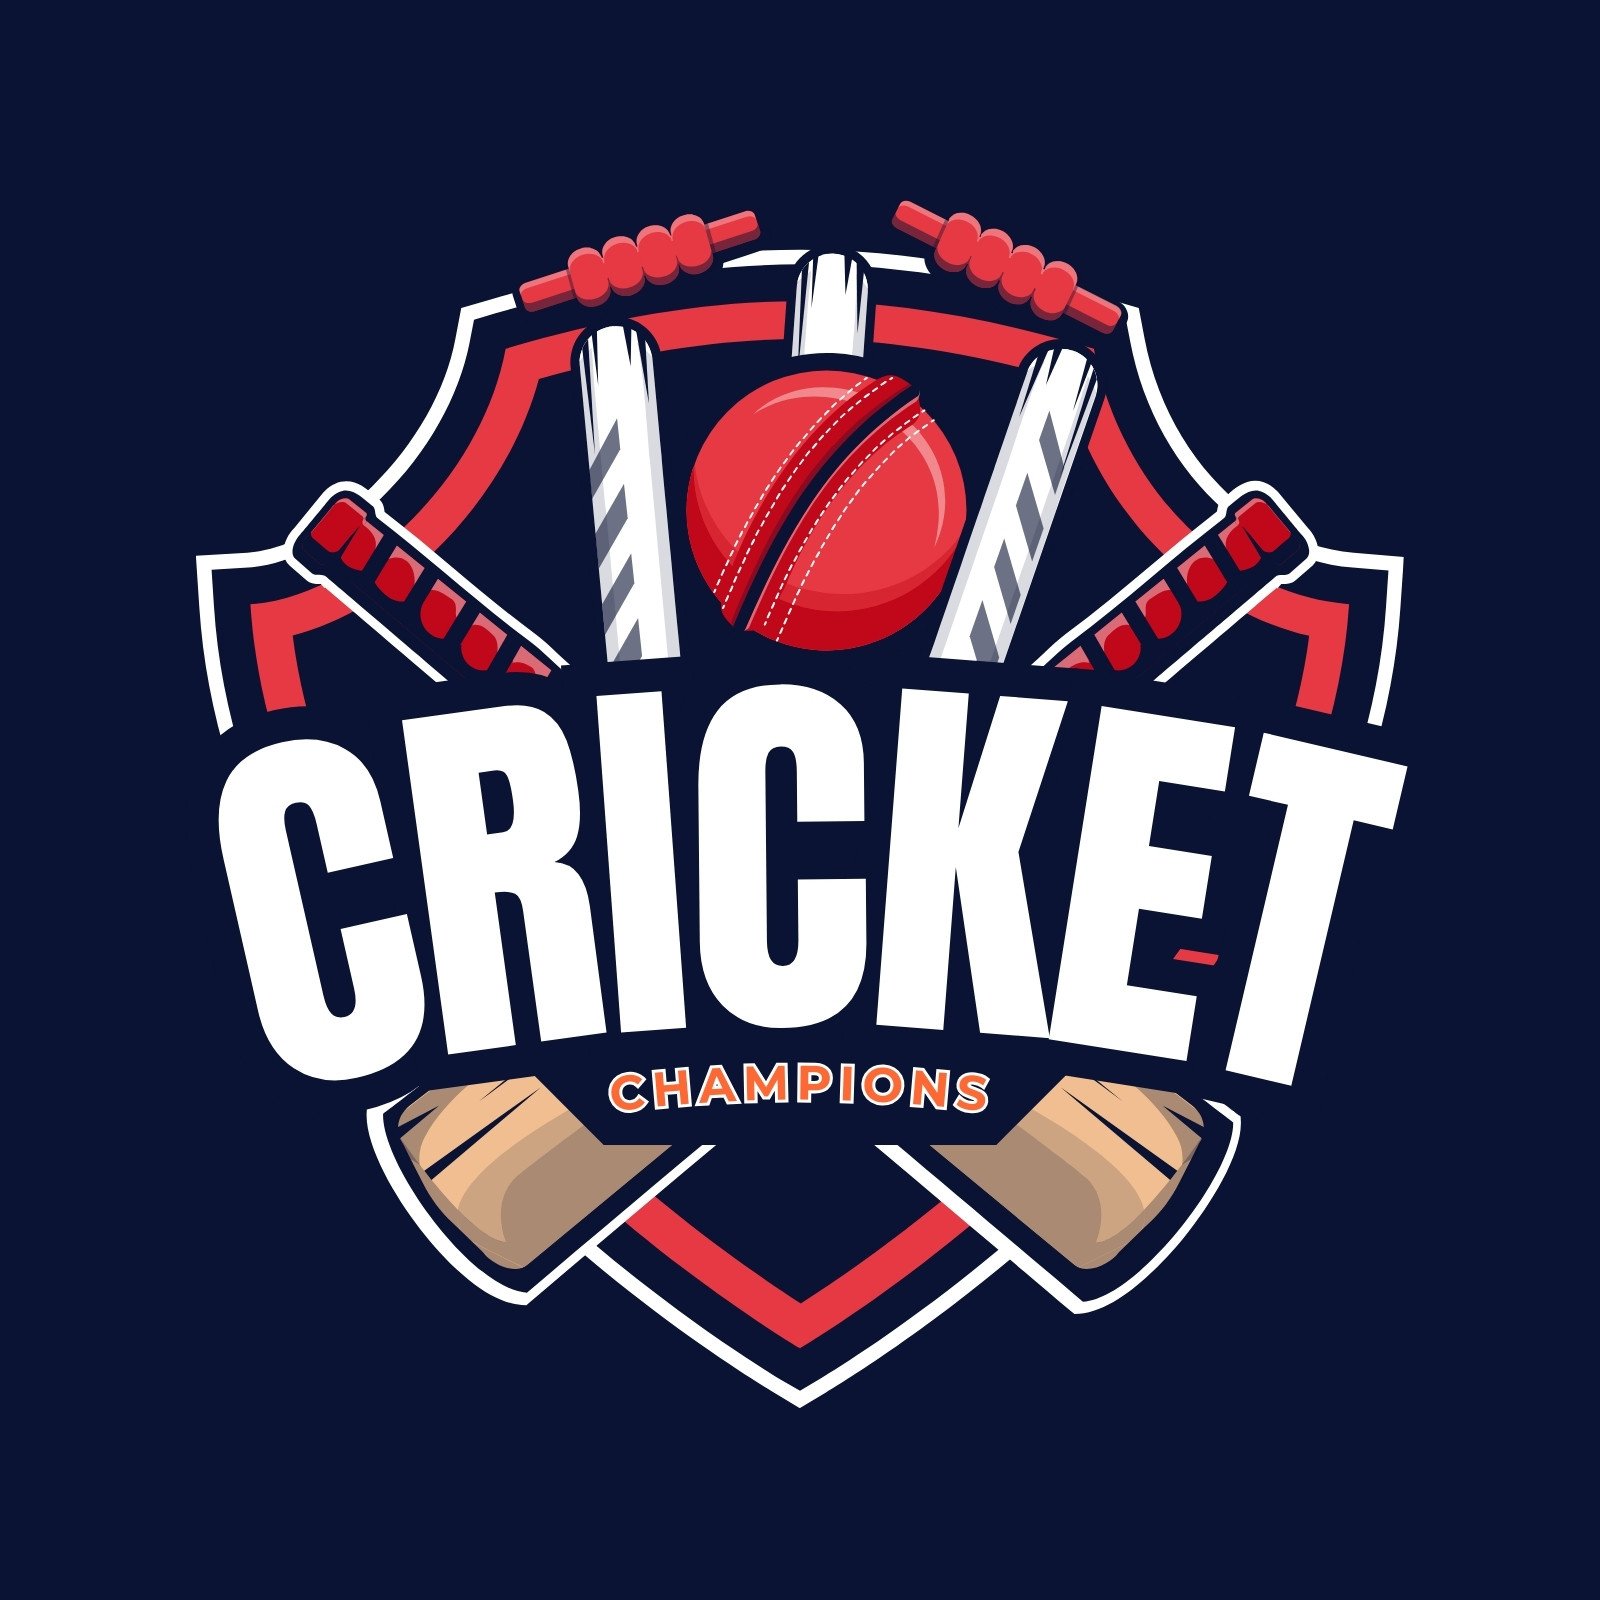 Cricket logo HD wallpapers | Pxfuel